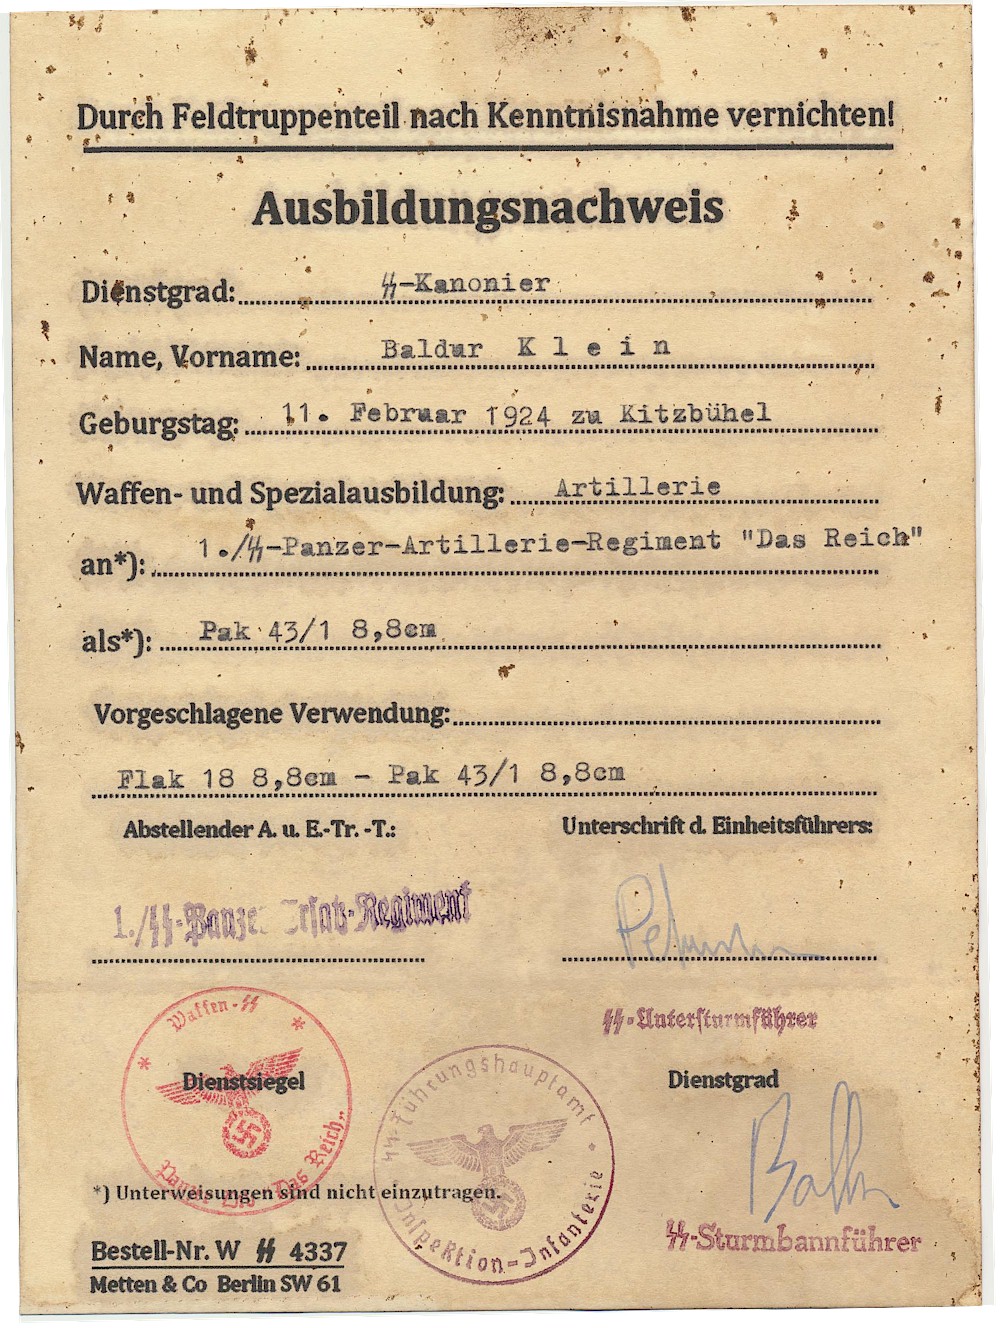 GERMAN PRACTICE PAK 431 AND FLAK 18 SS KANONIER BALDUR KLEIN 1.SS PZ ARTILLERIE RGT DAS REICH DOCUMENT 